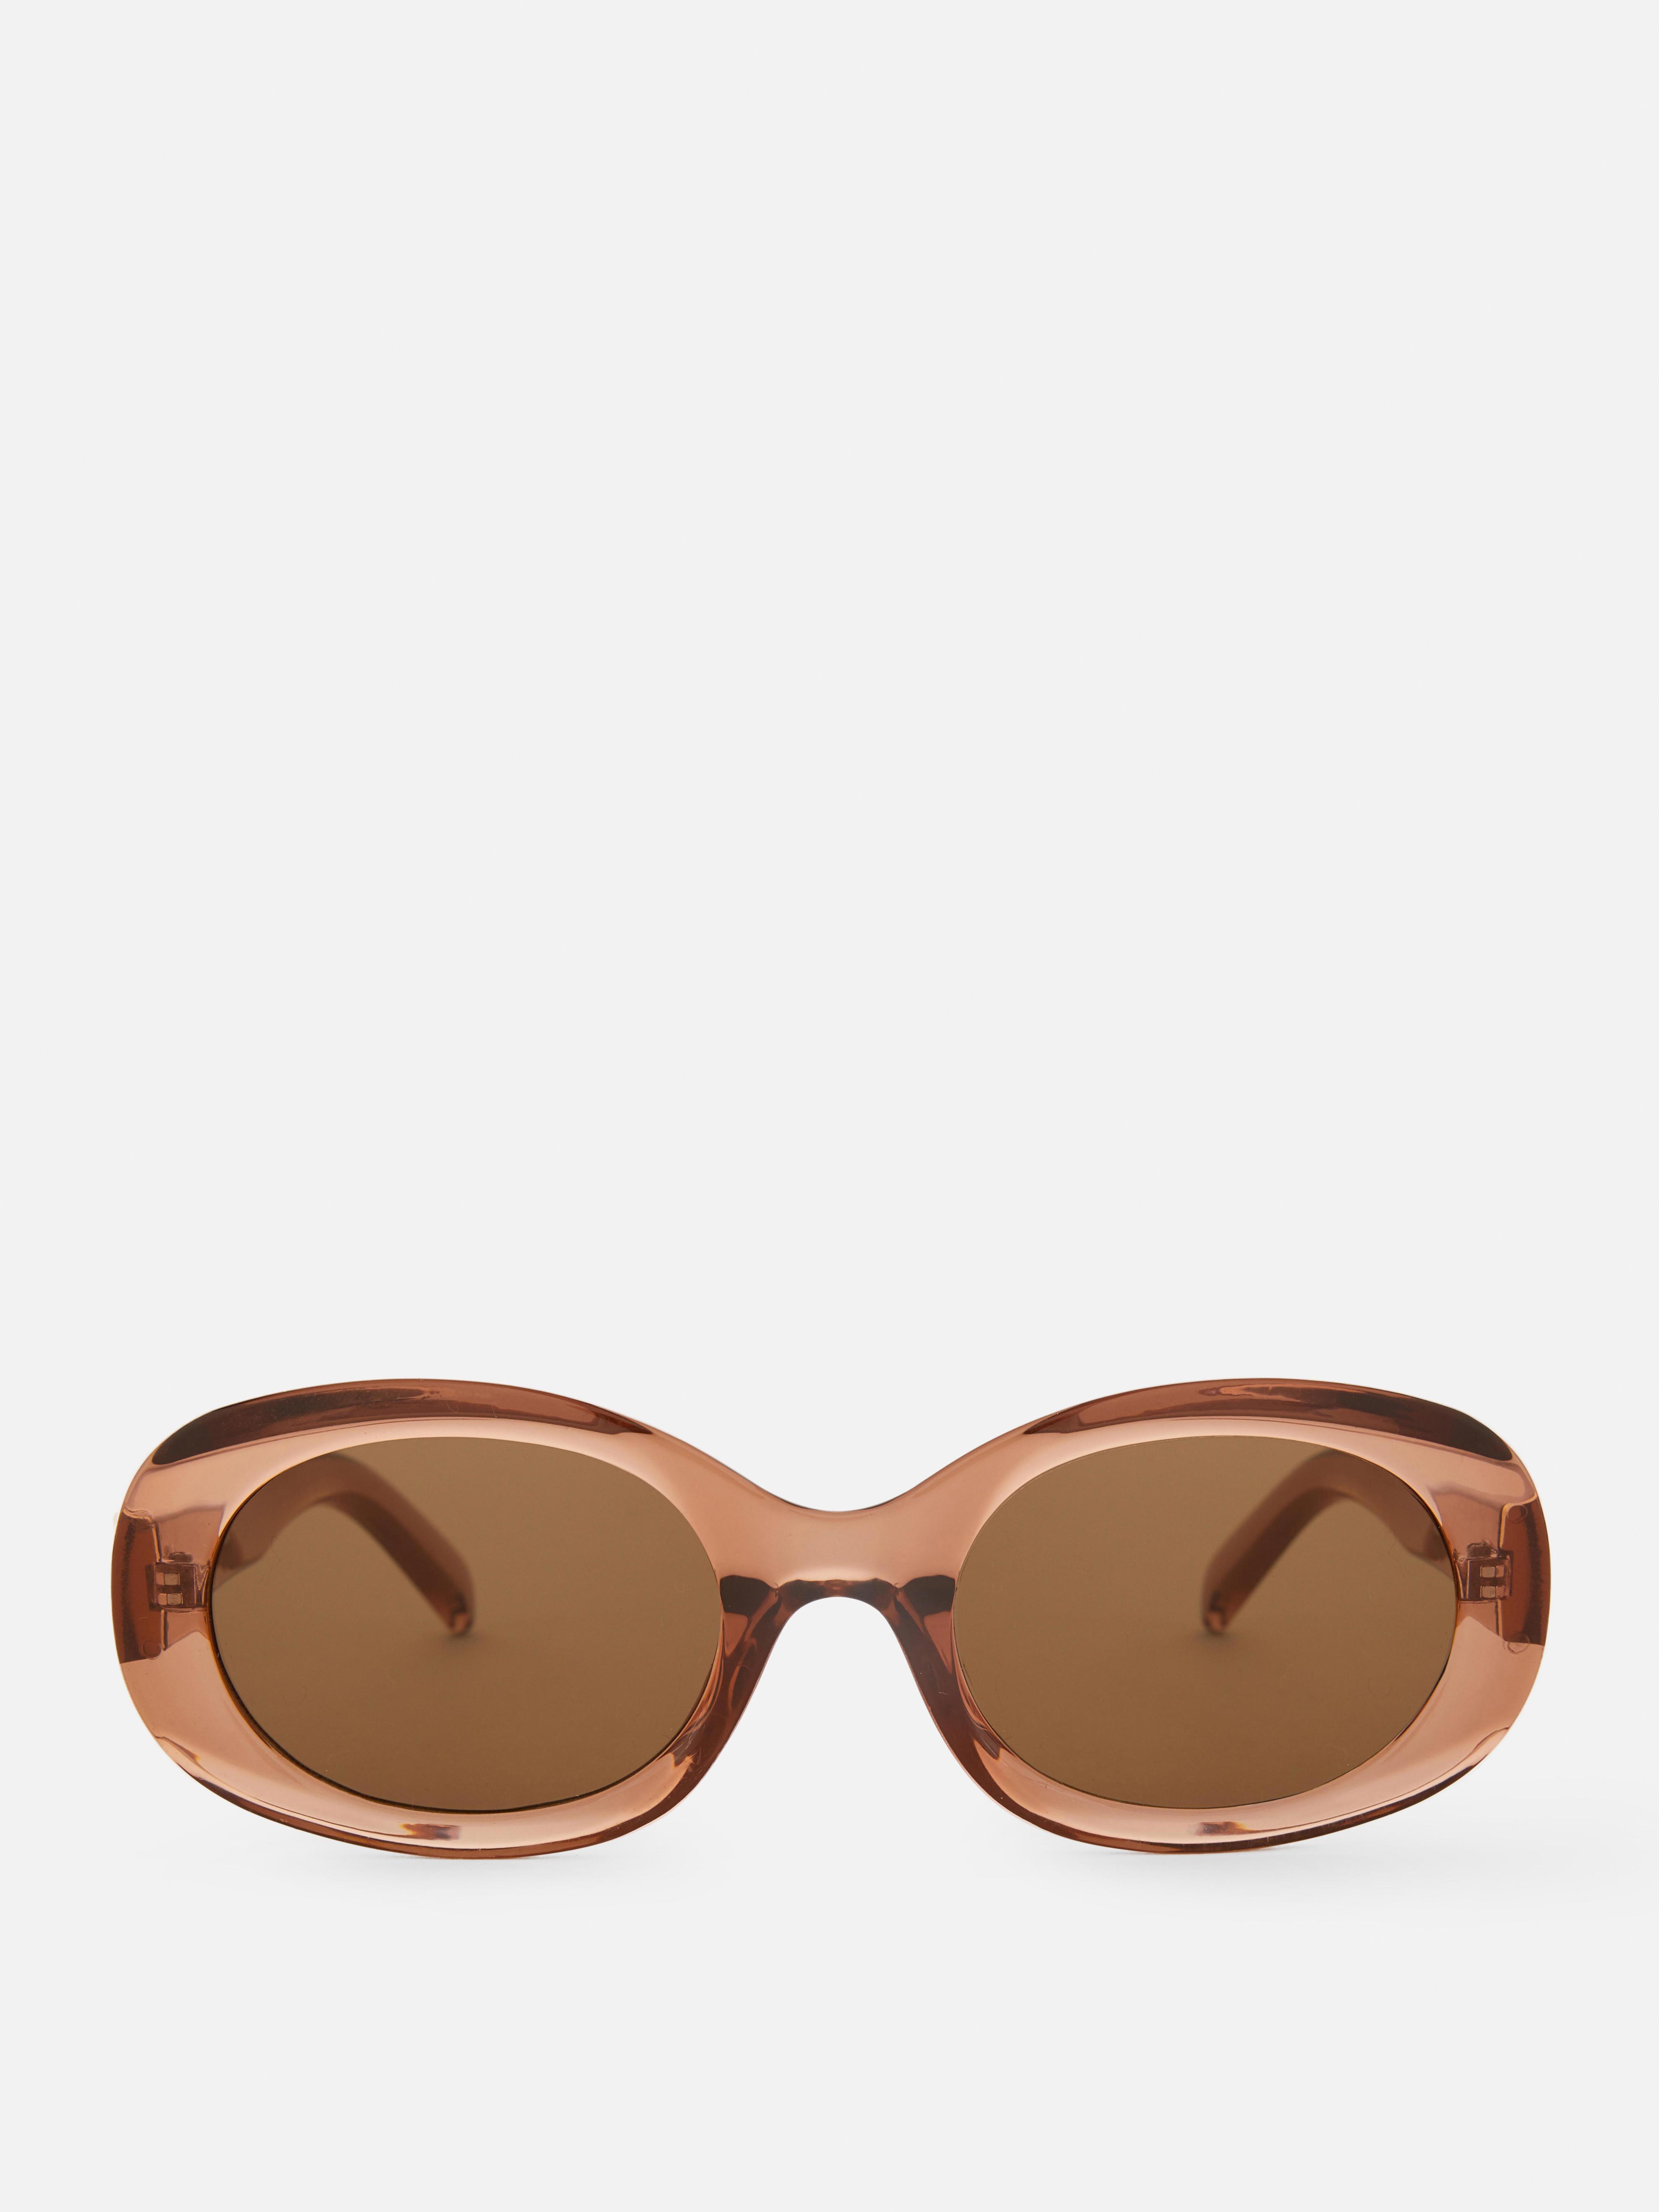 Aanbieding van Robuuste zonnebril met ovale glazen Rita Ora voor 5€ bij Primark